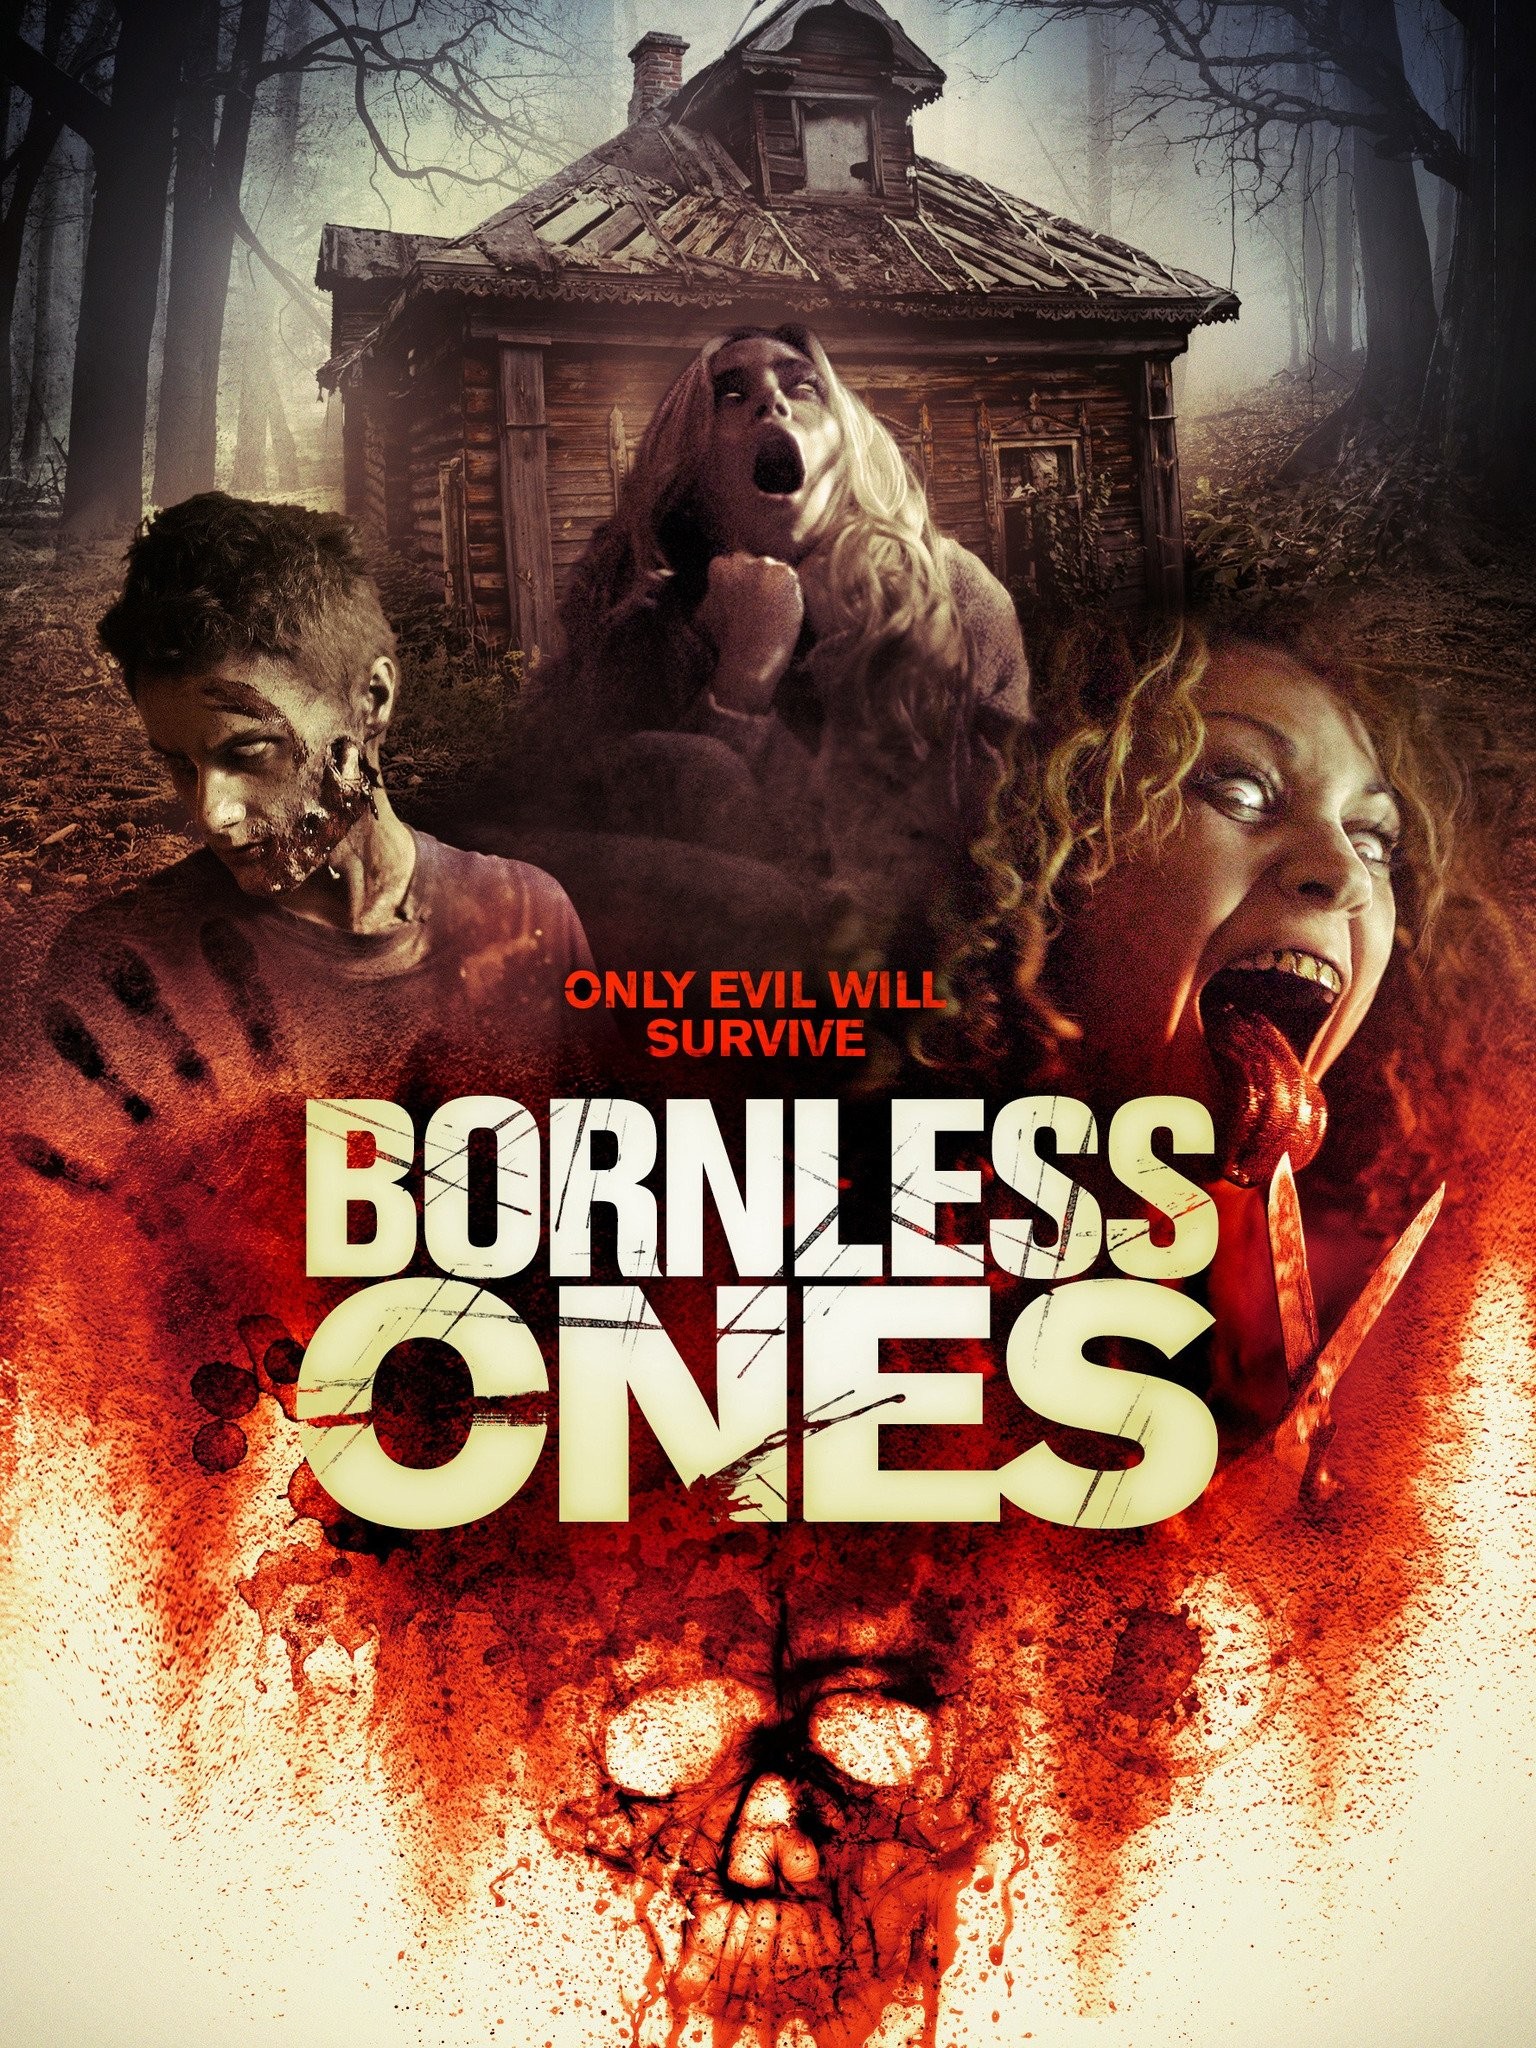 Bornless ones movie